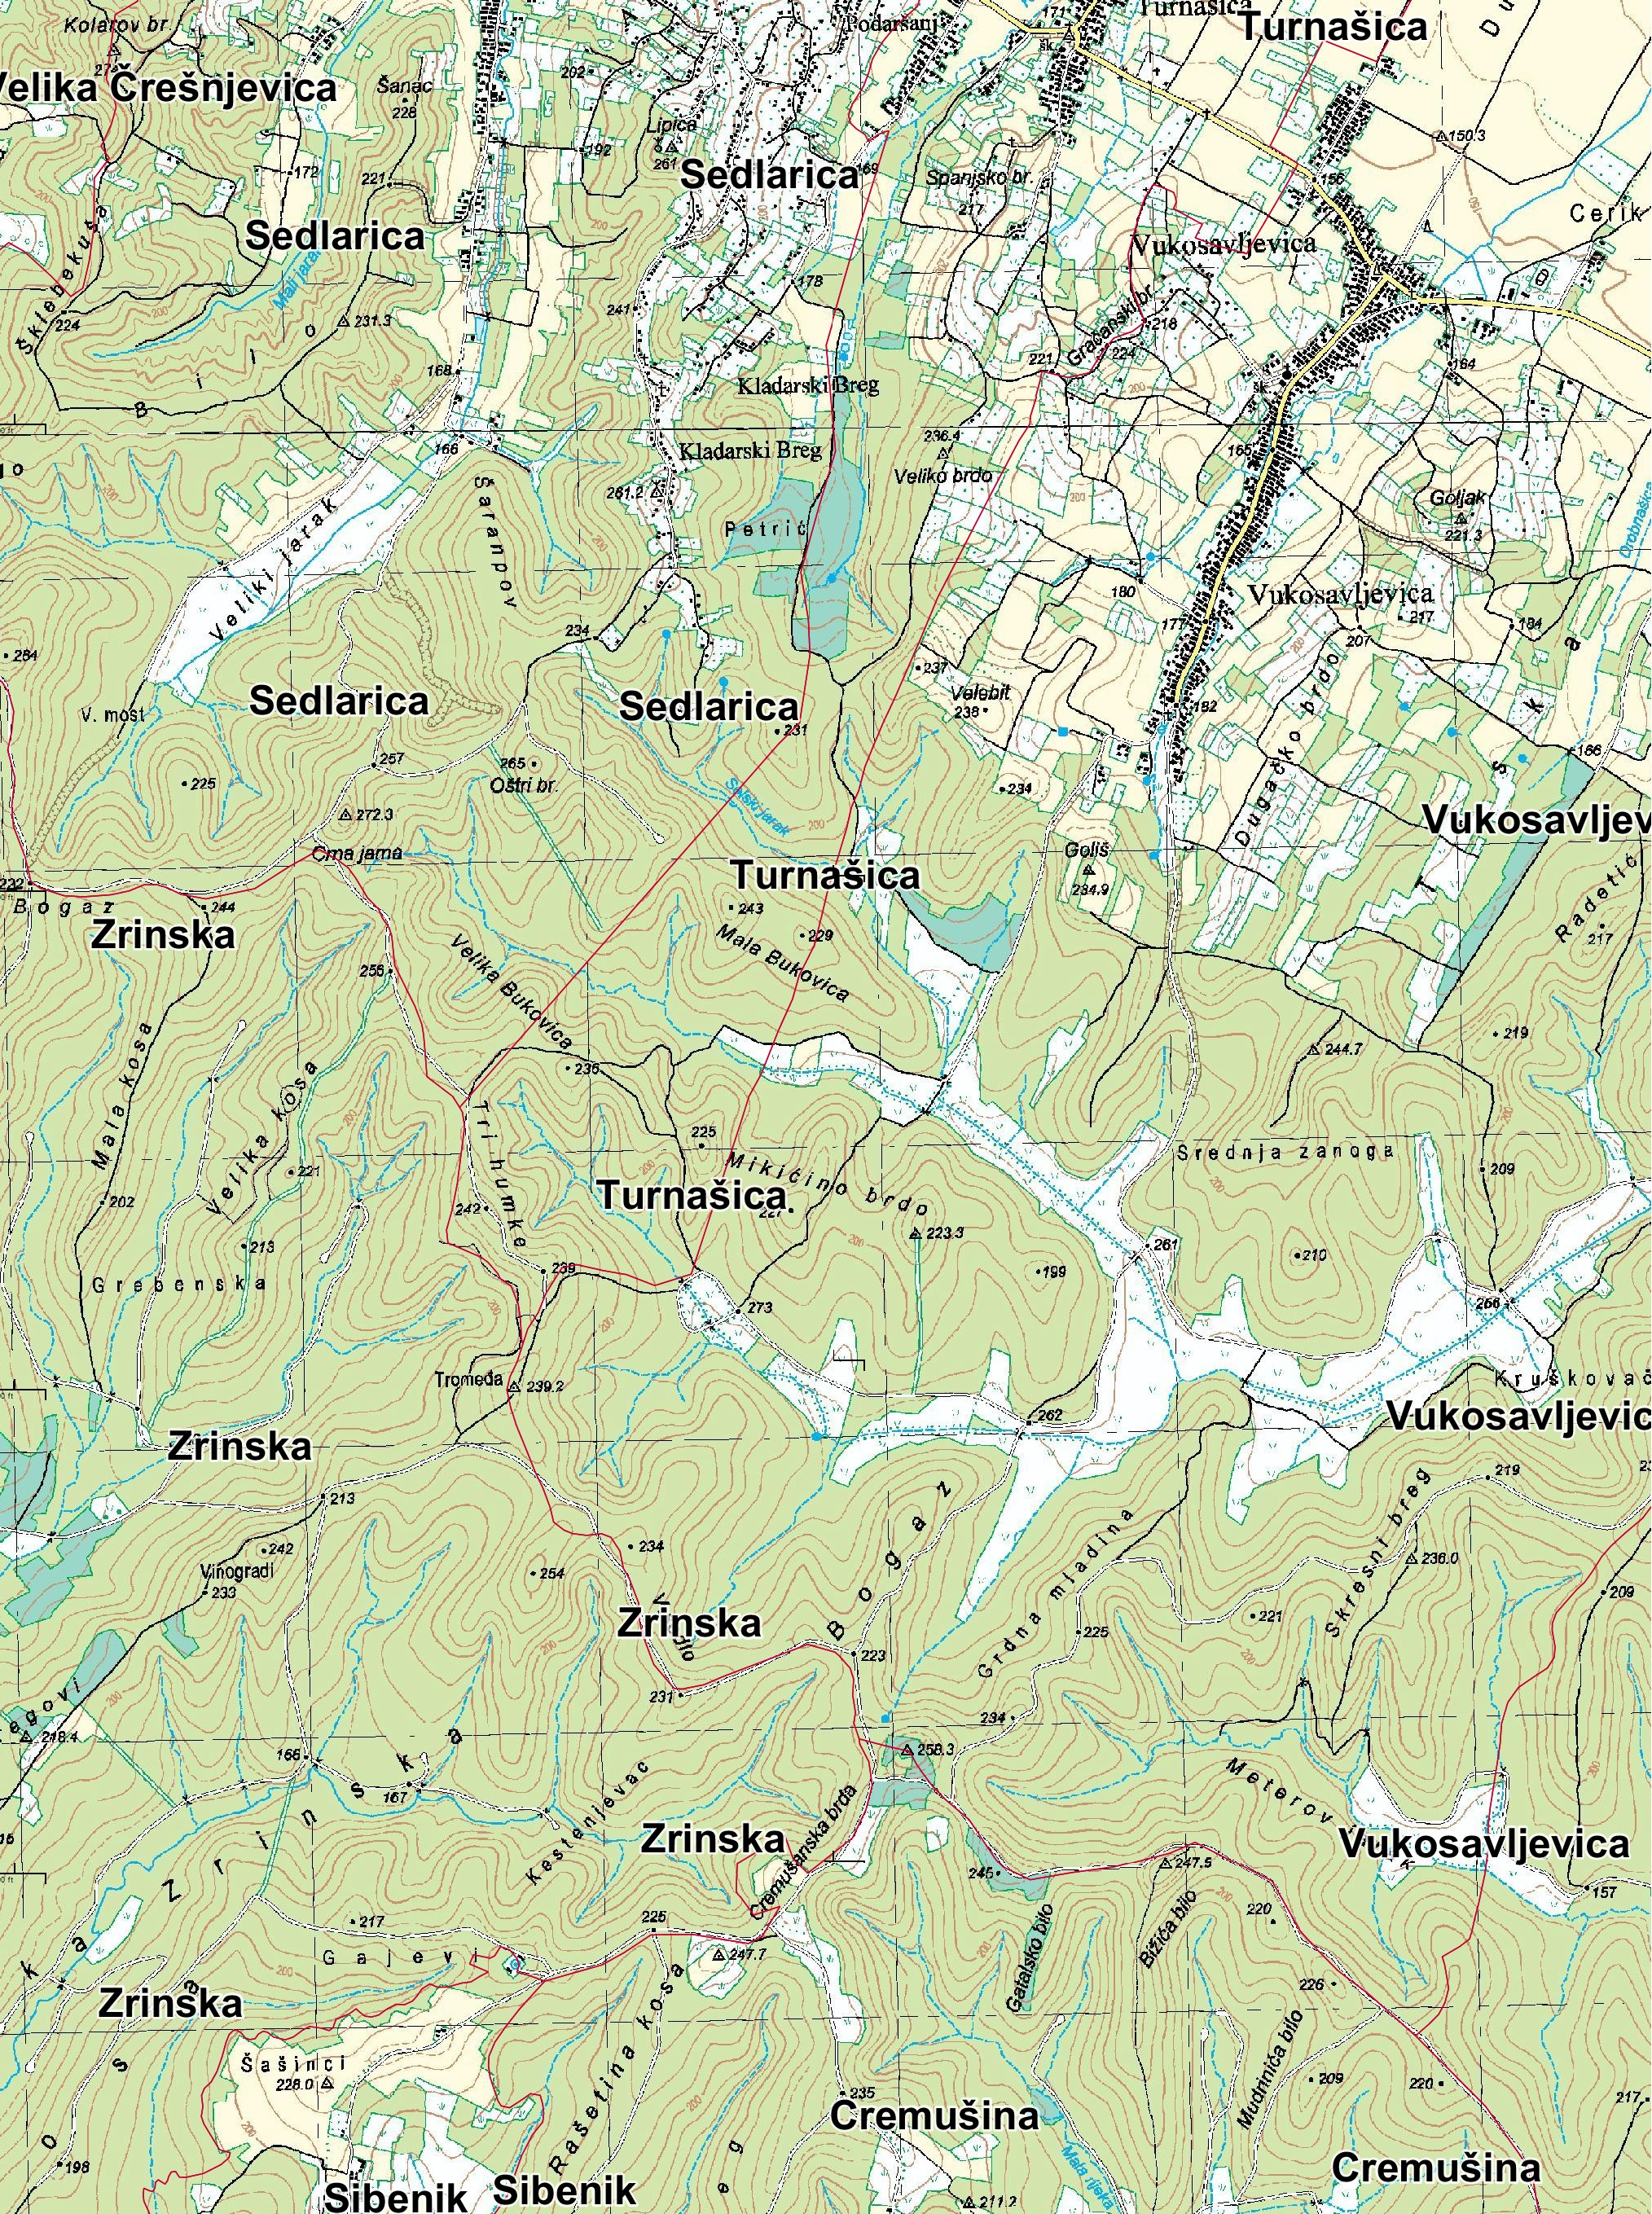 pitomača karta Vukosavljevica na topografskoj karti | Vukosavljevica pitomača karta